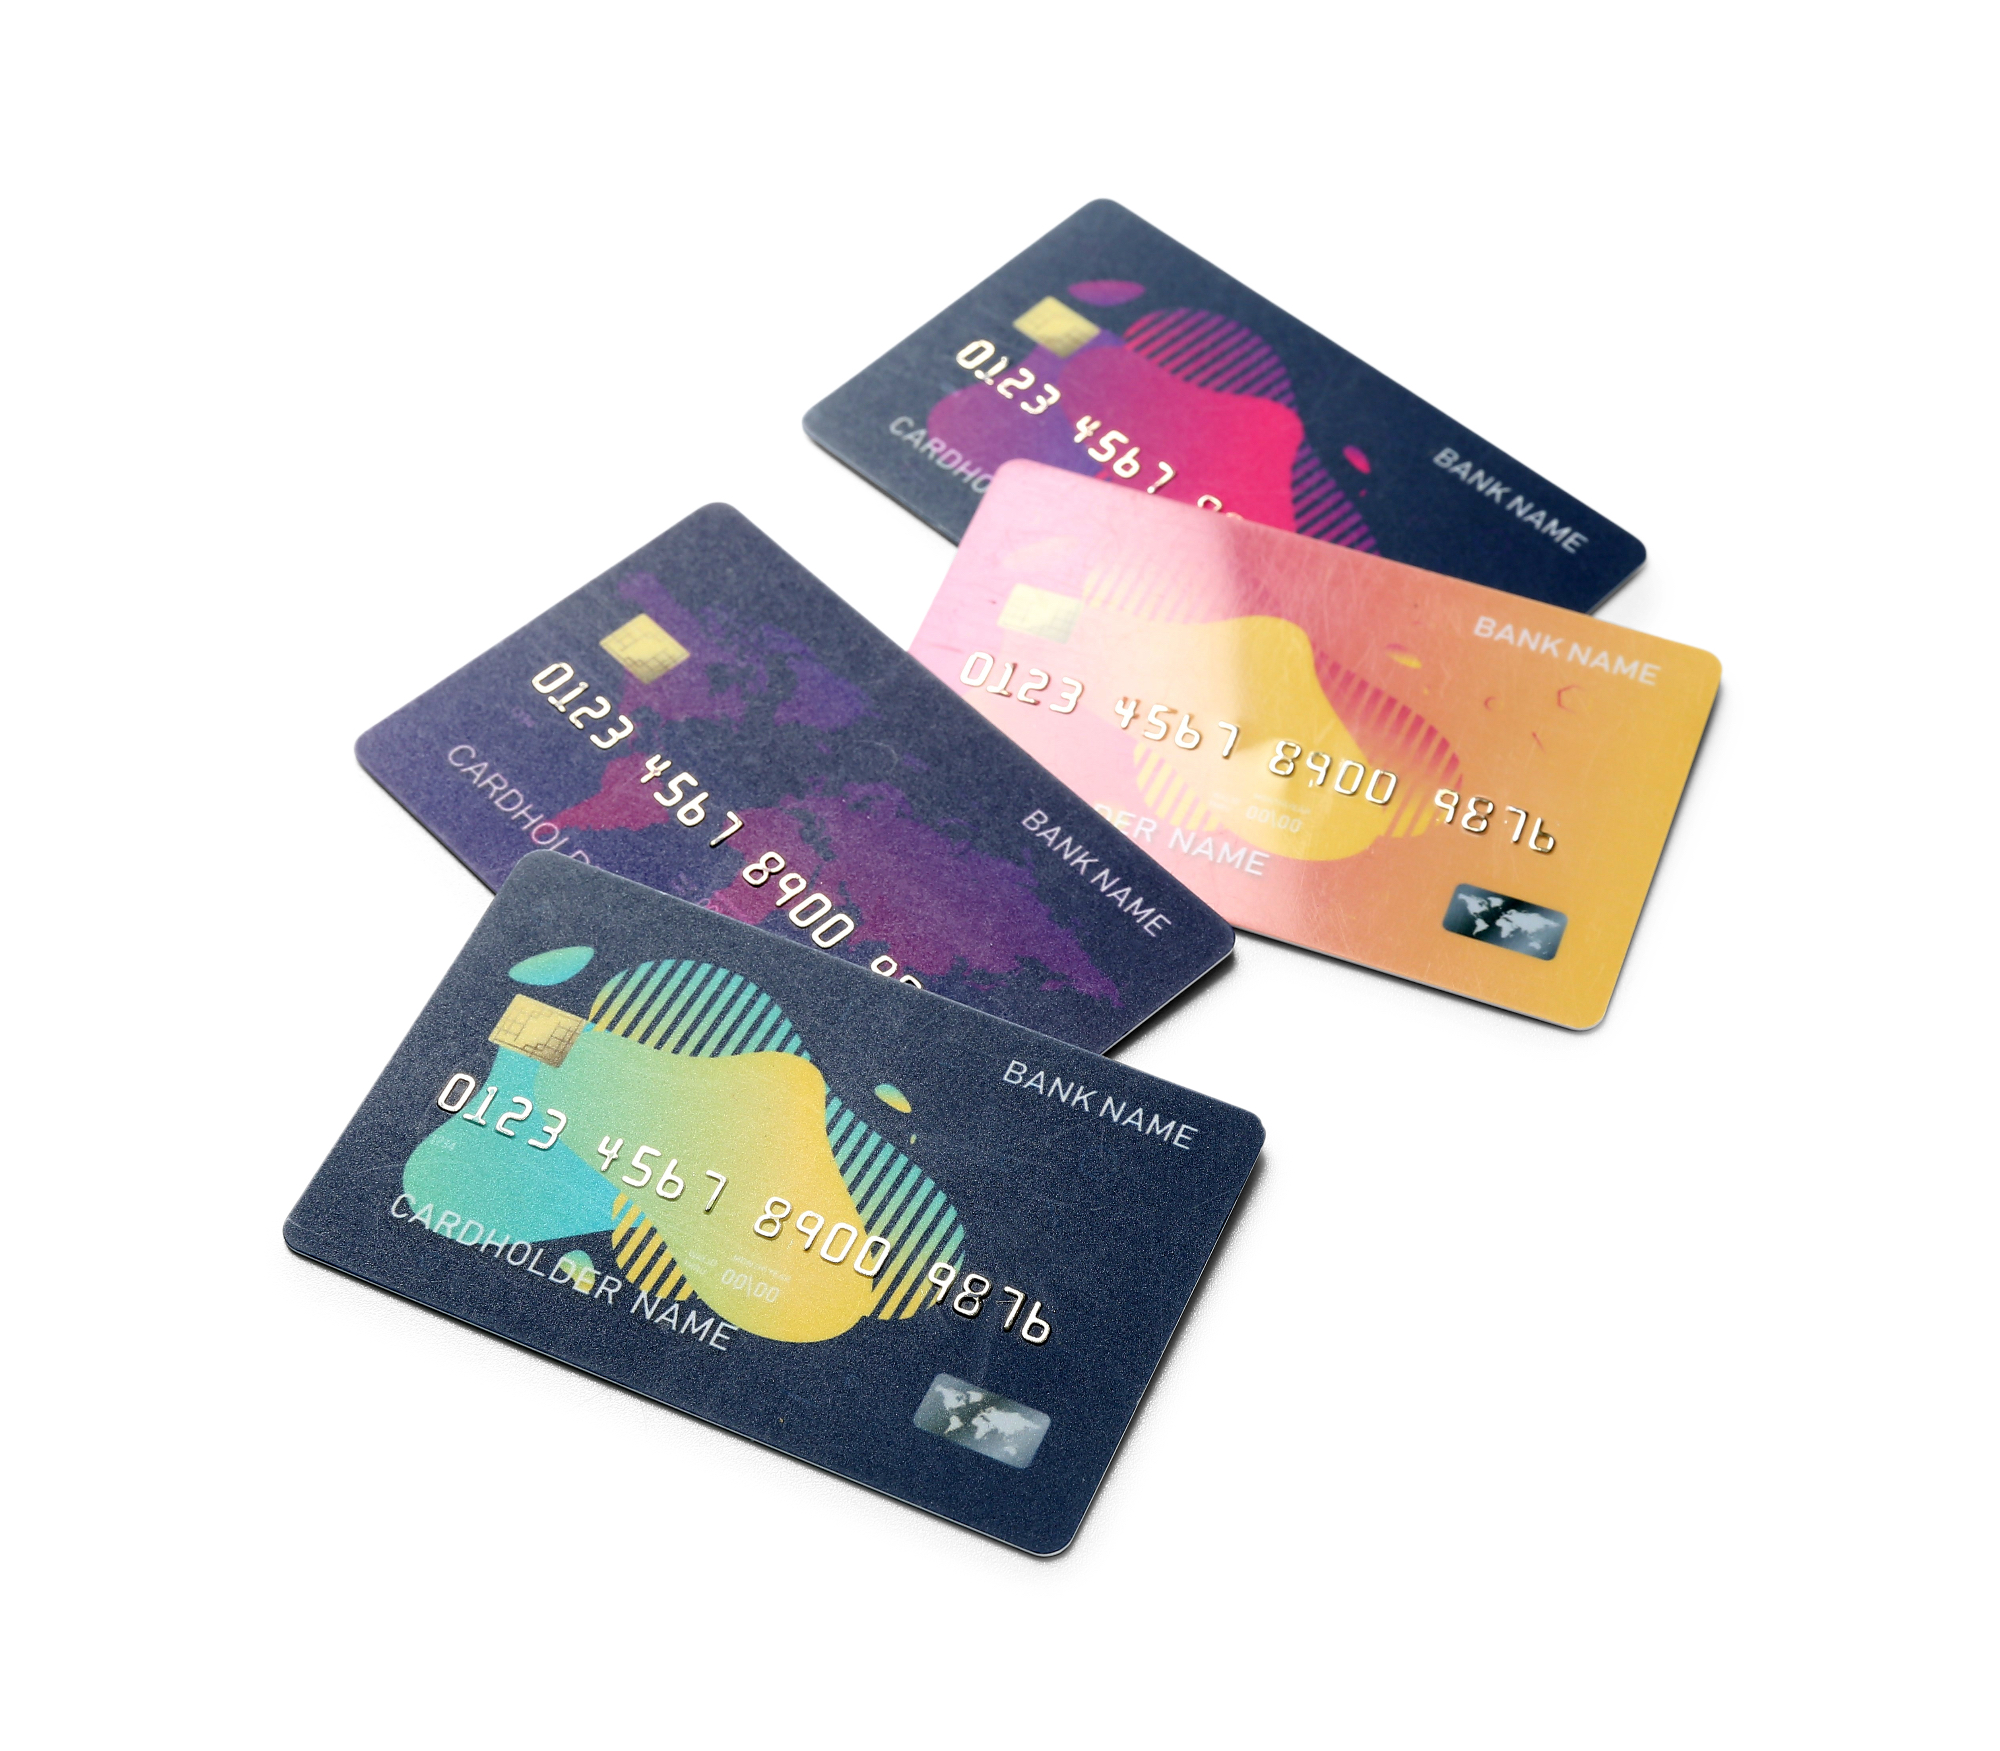 Plačilne kartice so danes postale najbolj popularen način plačila